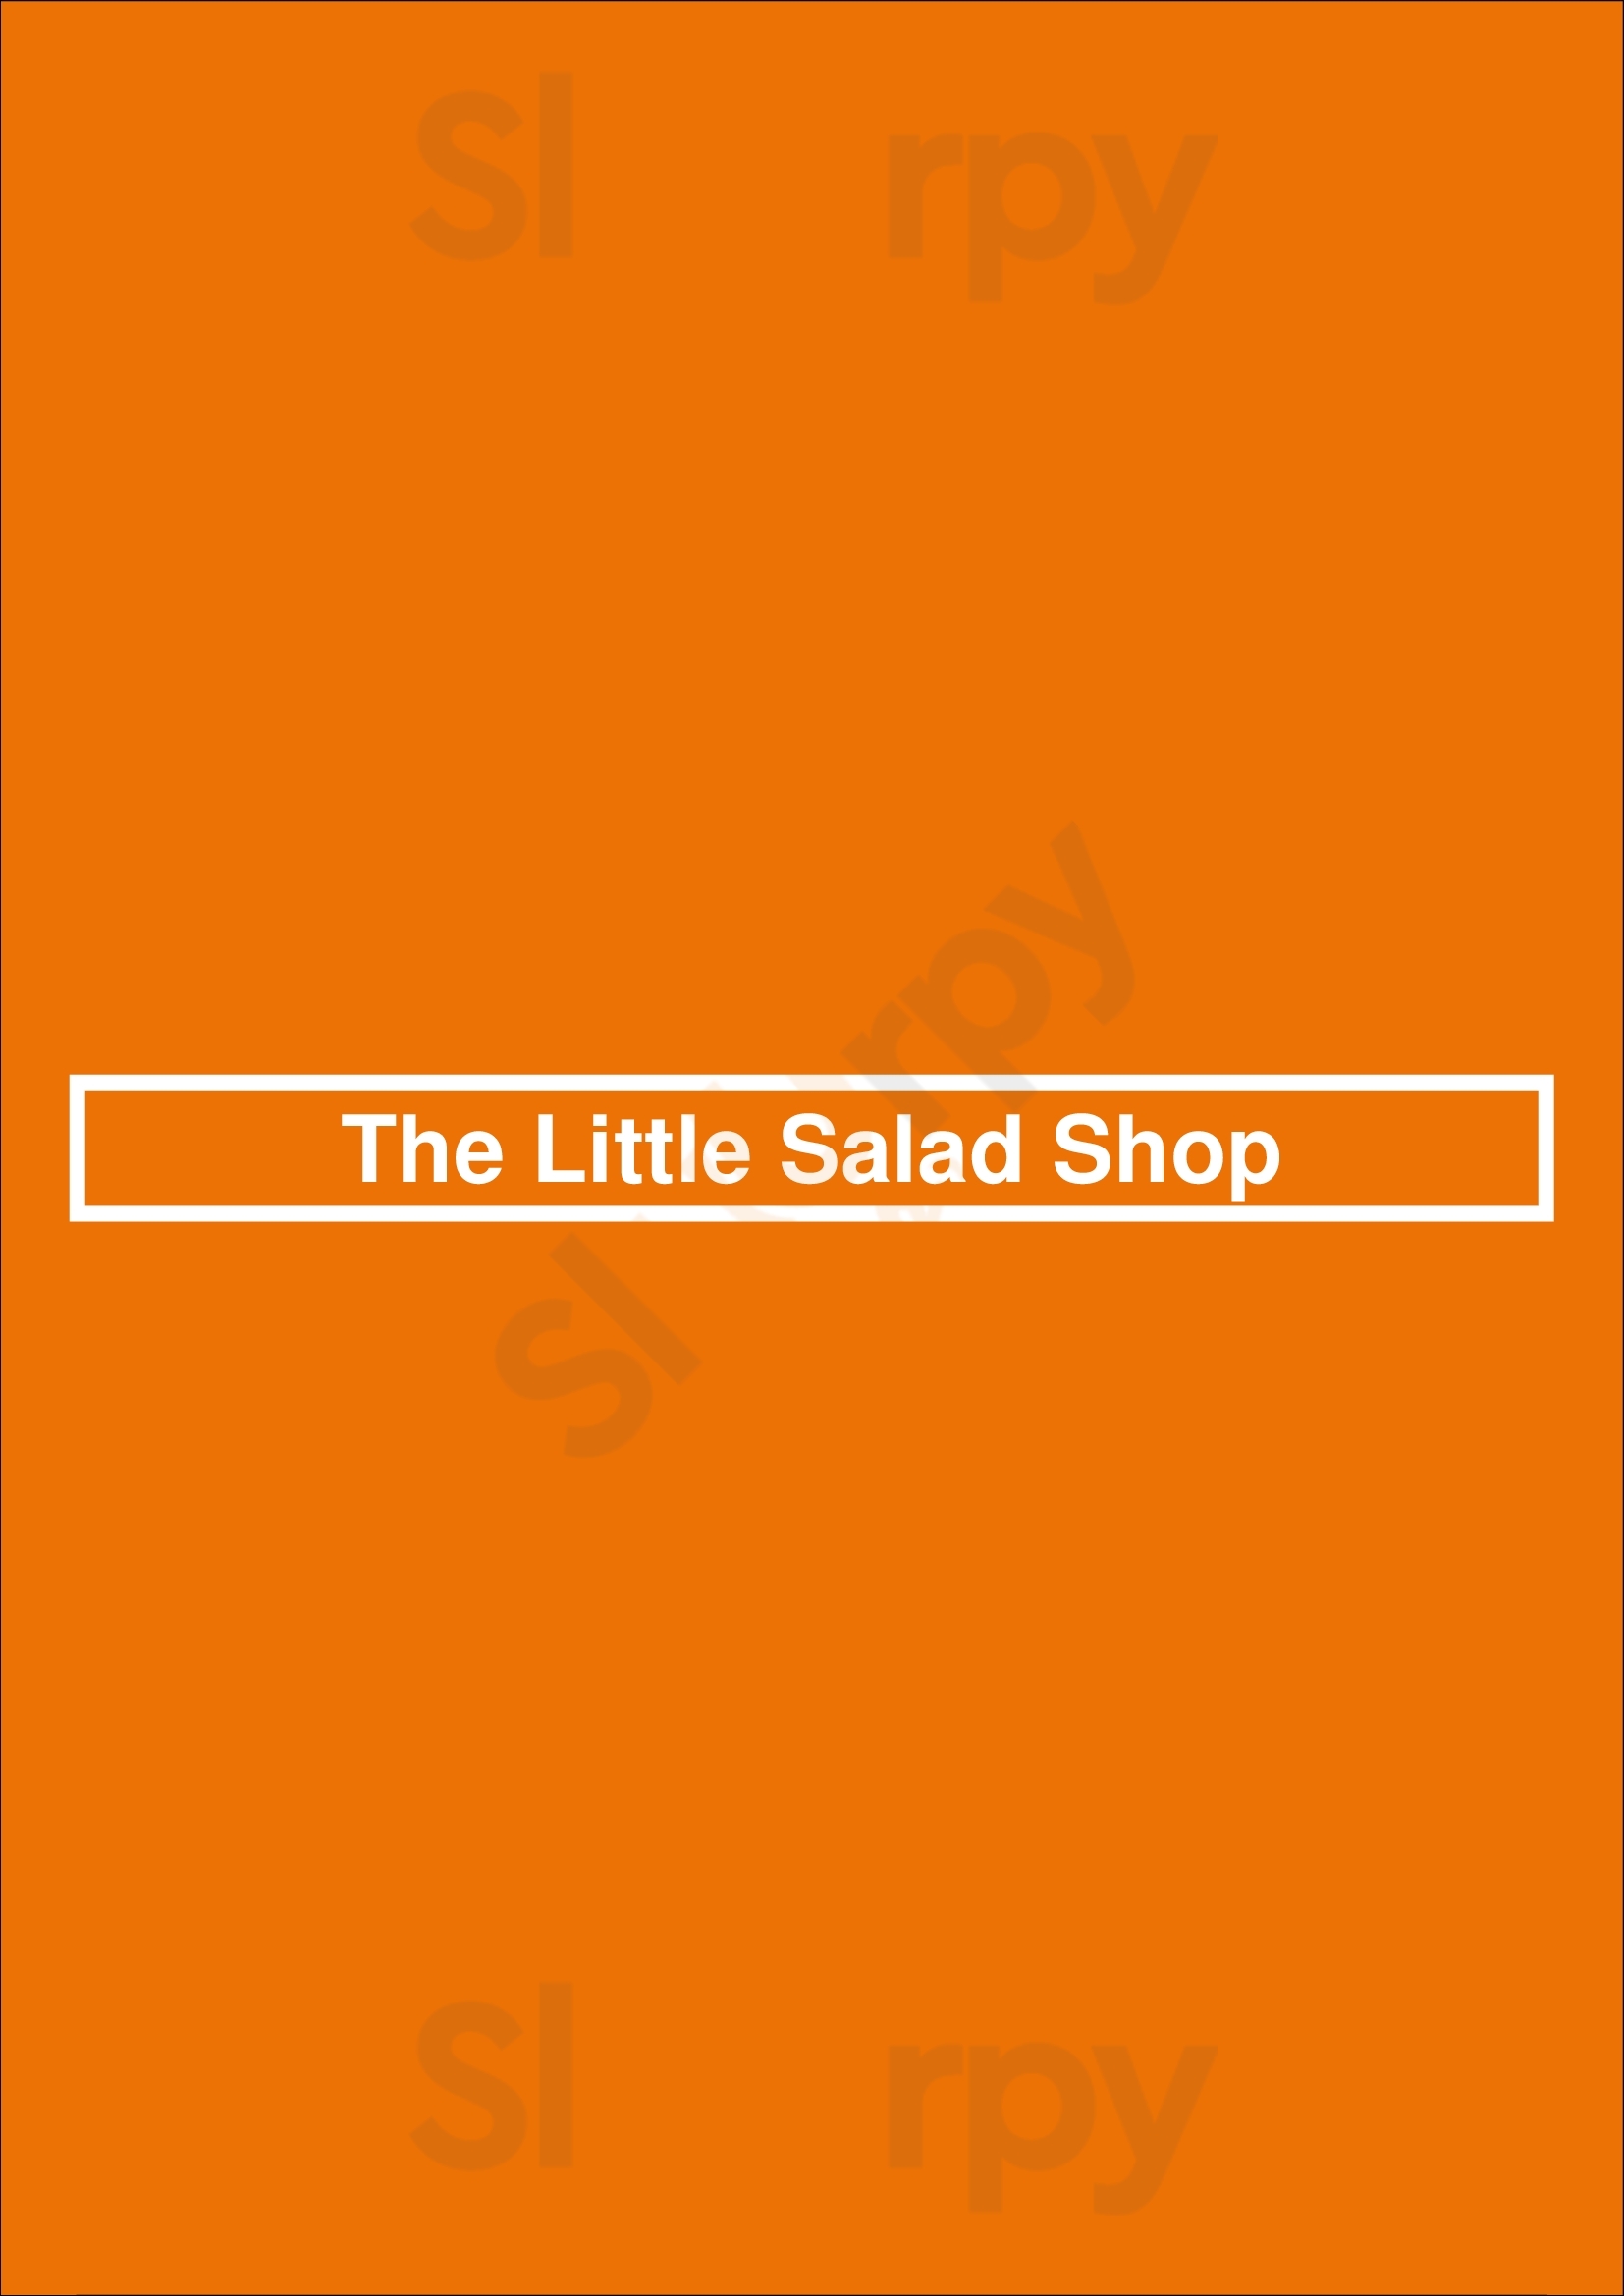 The Little Salad Shop New Haven Menu - 1